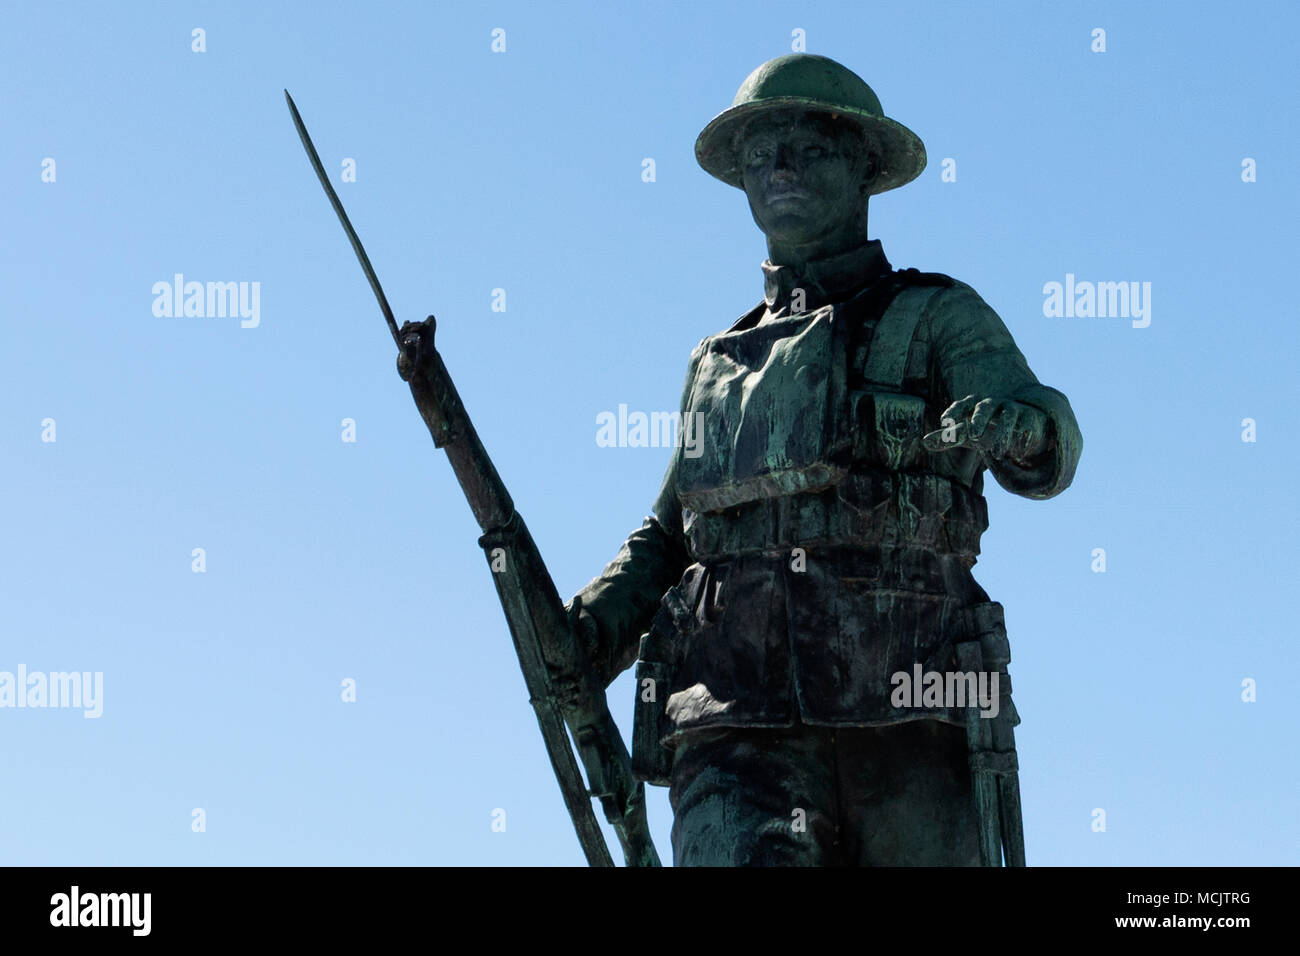 Statut Soldat Canadien Monument Mémorial, Richmond Québec Estrie Canada Stock Photo